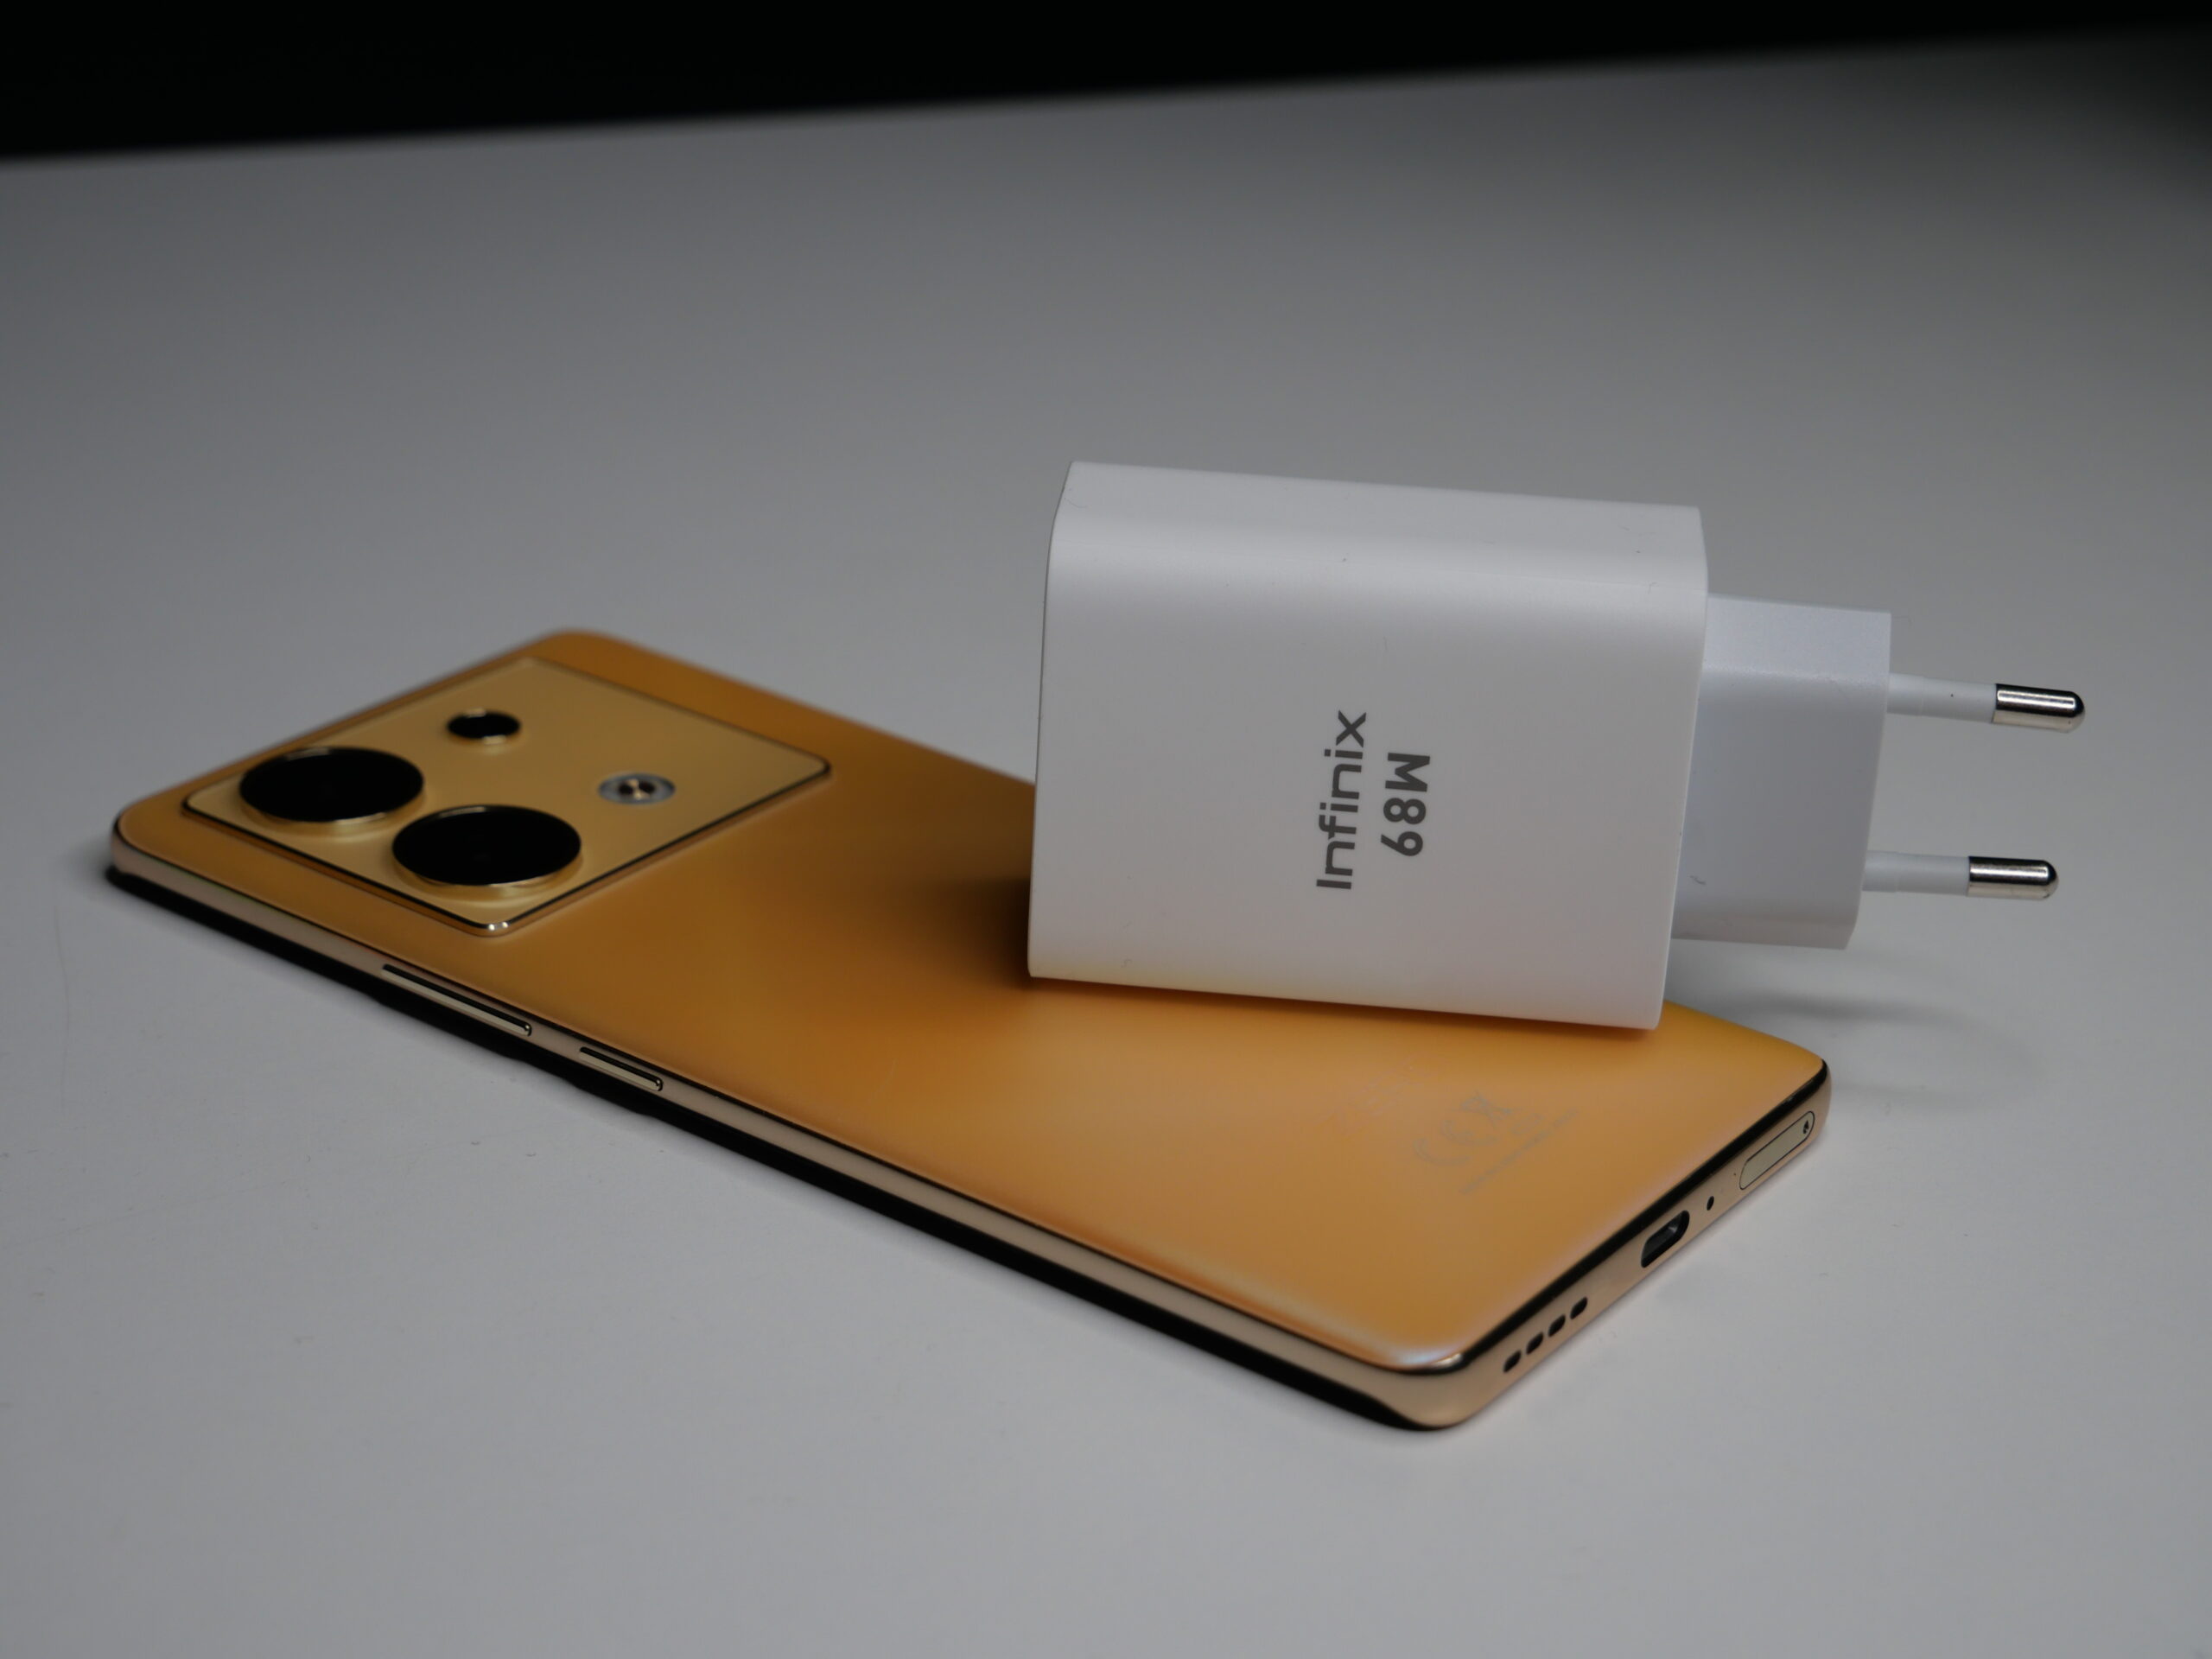 Złoty smartfon leżący na płasko z widocznymi potrójnymi aparatami z tyłu i białą ładowarką oznaczoną jako "Infinix 68W" umieszczoną na jego ekranie.